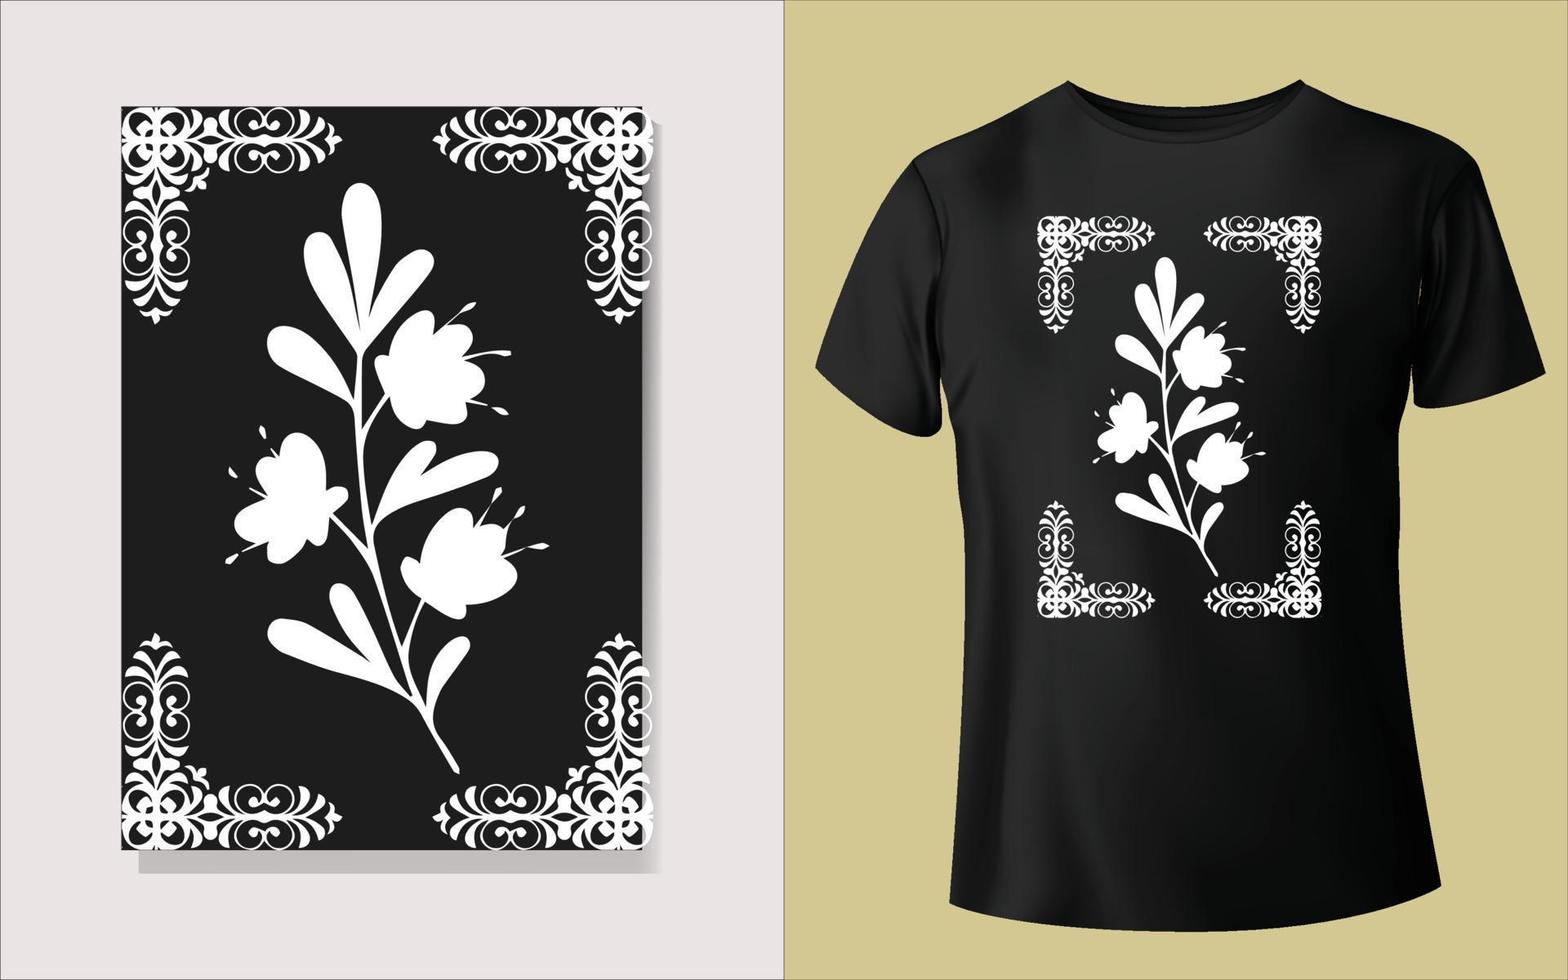 zwart en wit tee overhemd ontwerp vector